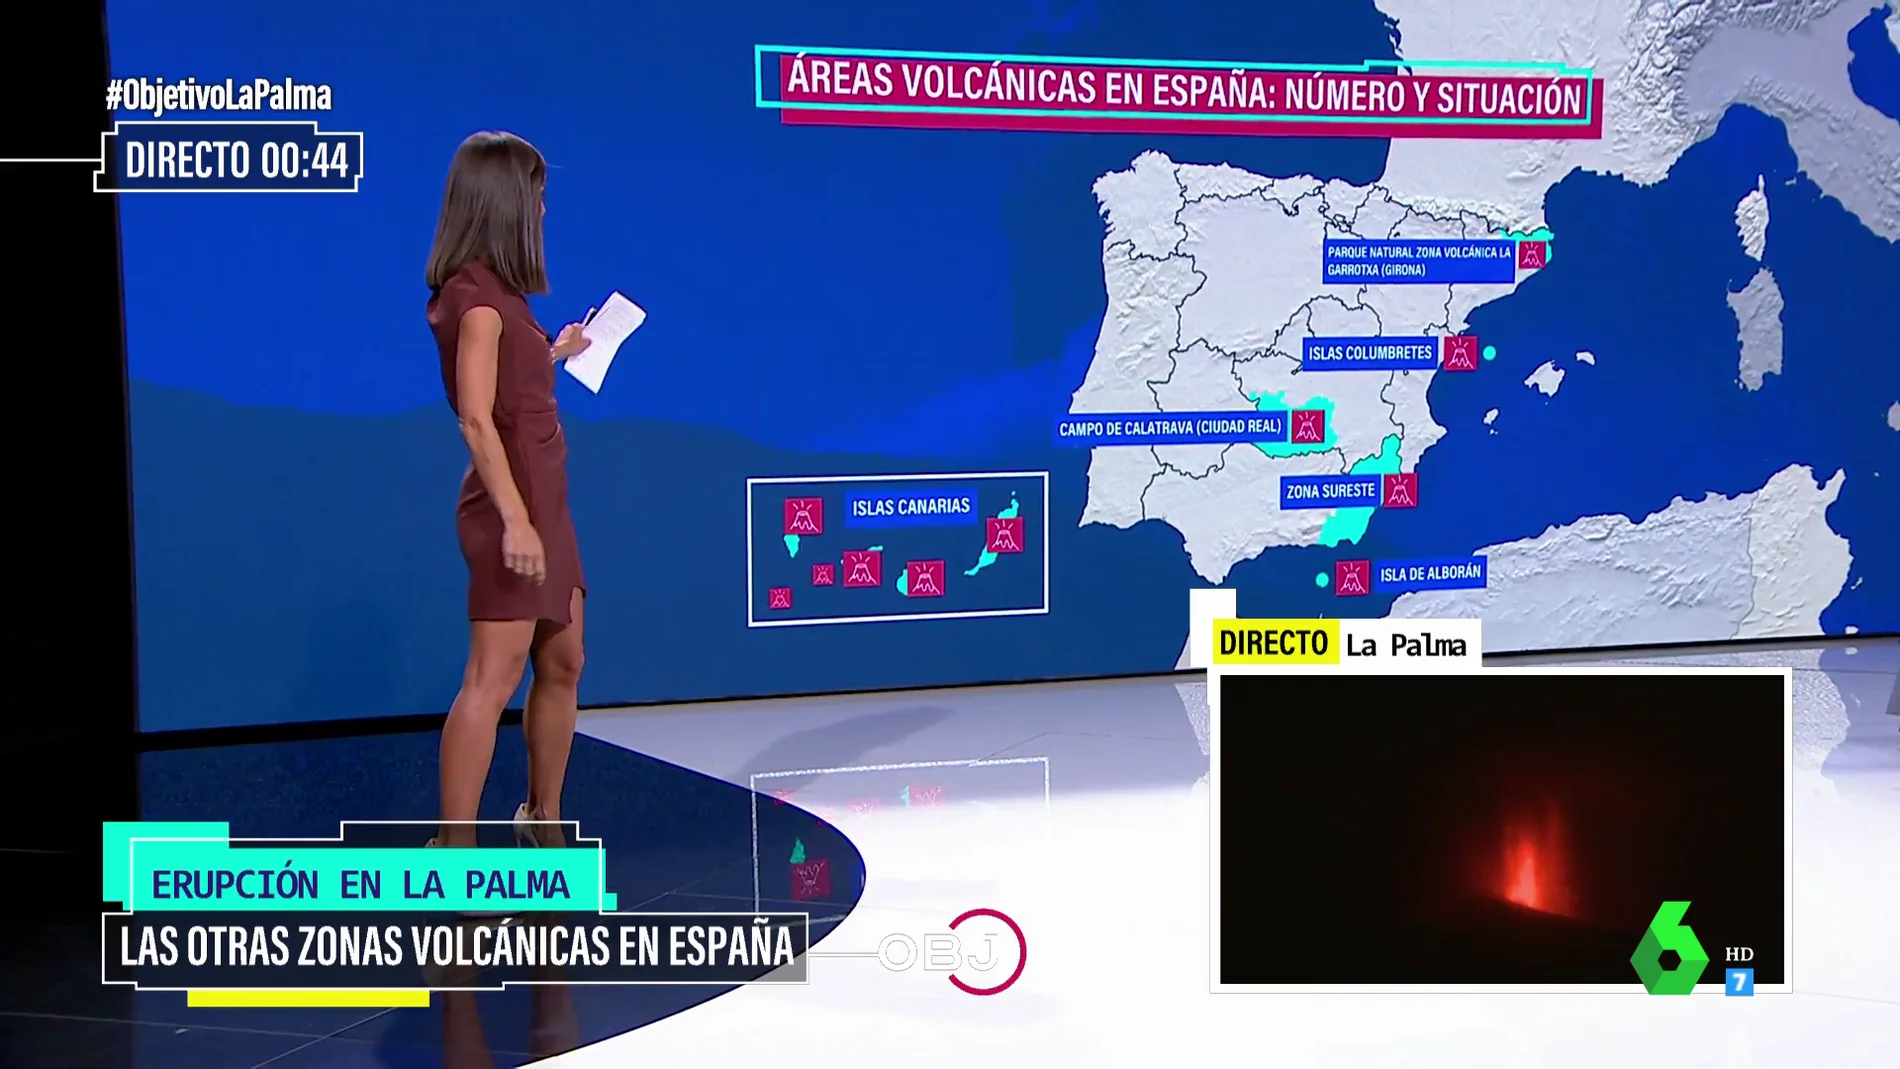 Las seis zonas volcánicas de España hacia las que los expertos miran con mucha atención